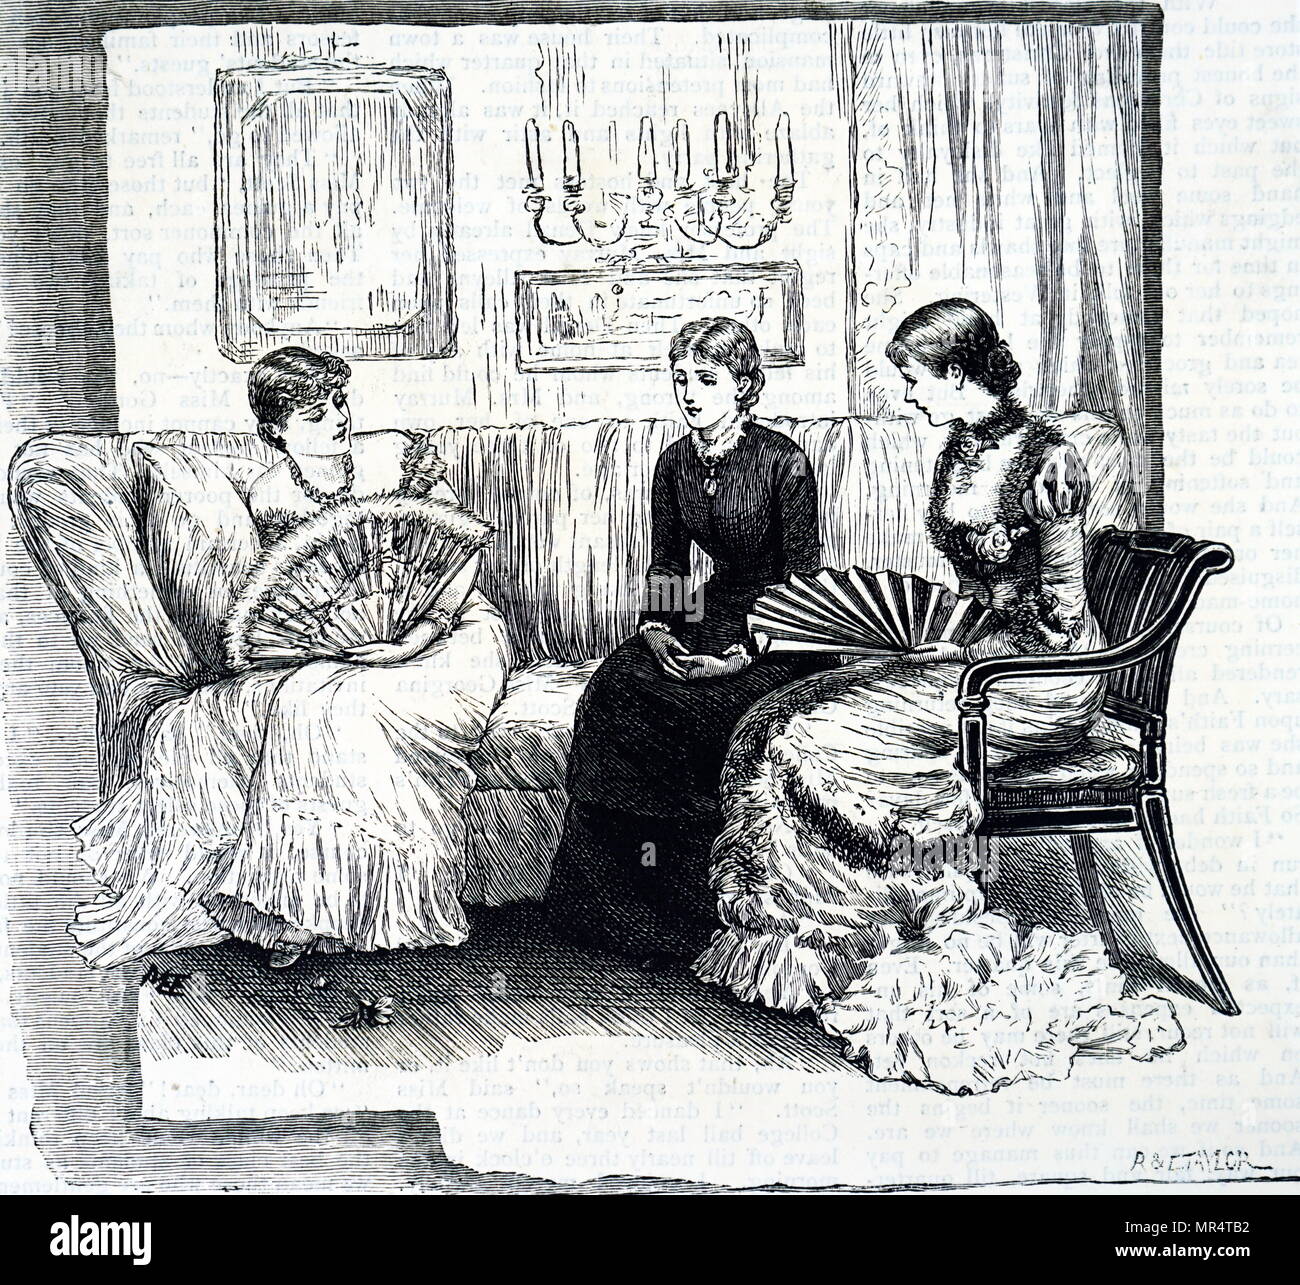 Illustration de riches jeunes femmes à l'aide de ventilateurs pour eux-mêmes. Illustré par Mary Ellen Edwards (1838-1934) un artiste anglais et illustrateur de livres pour enfants. En date du 19e siècle Banque D'Images